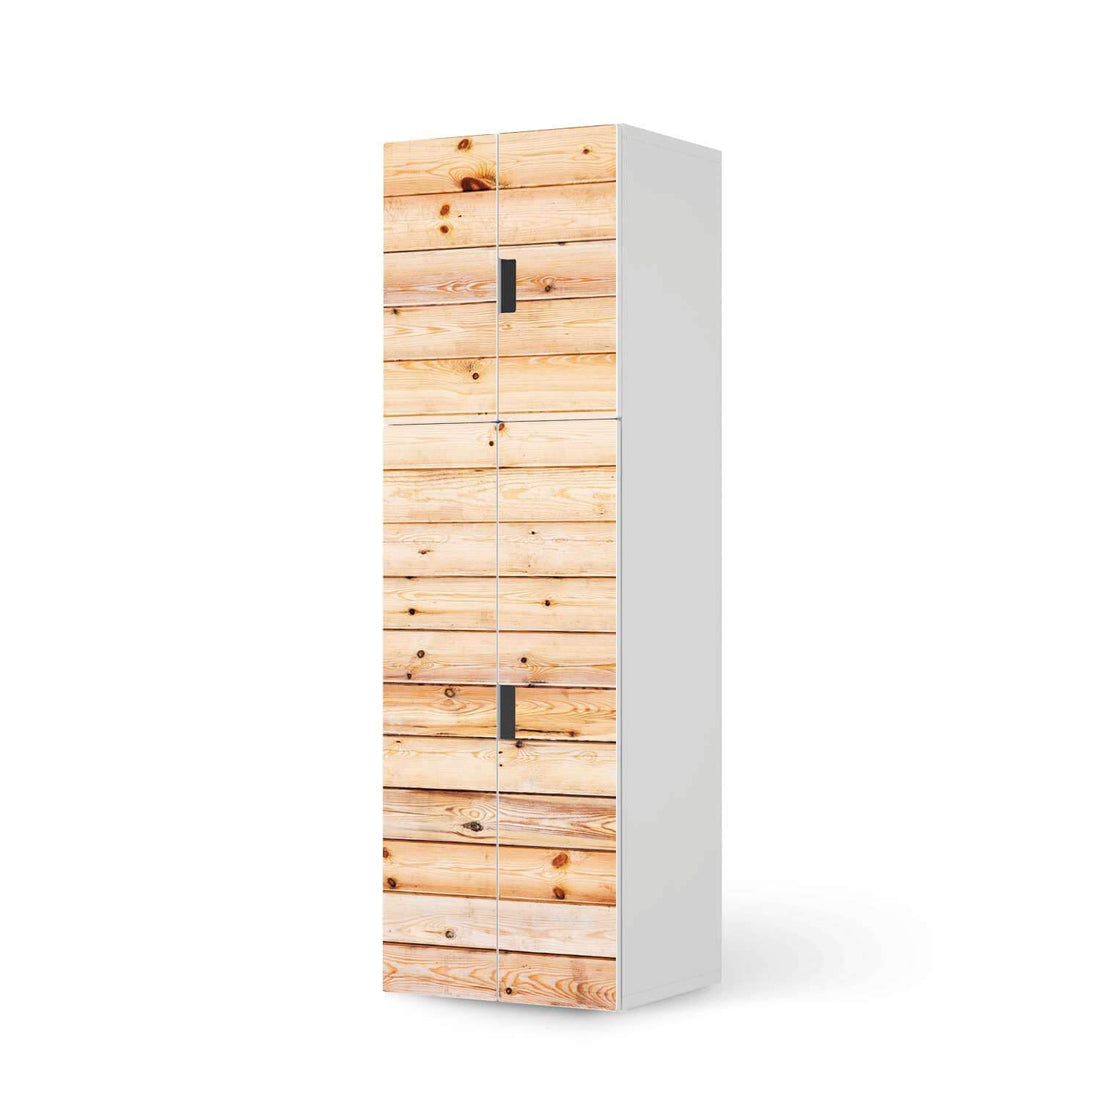 Selbstklebende Folie Bright Planks - IKEA Stuva kombiniert - 2 große Türen und 2 kleine Türen (Kombination 2)  - weiss